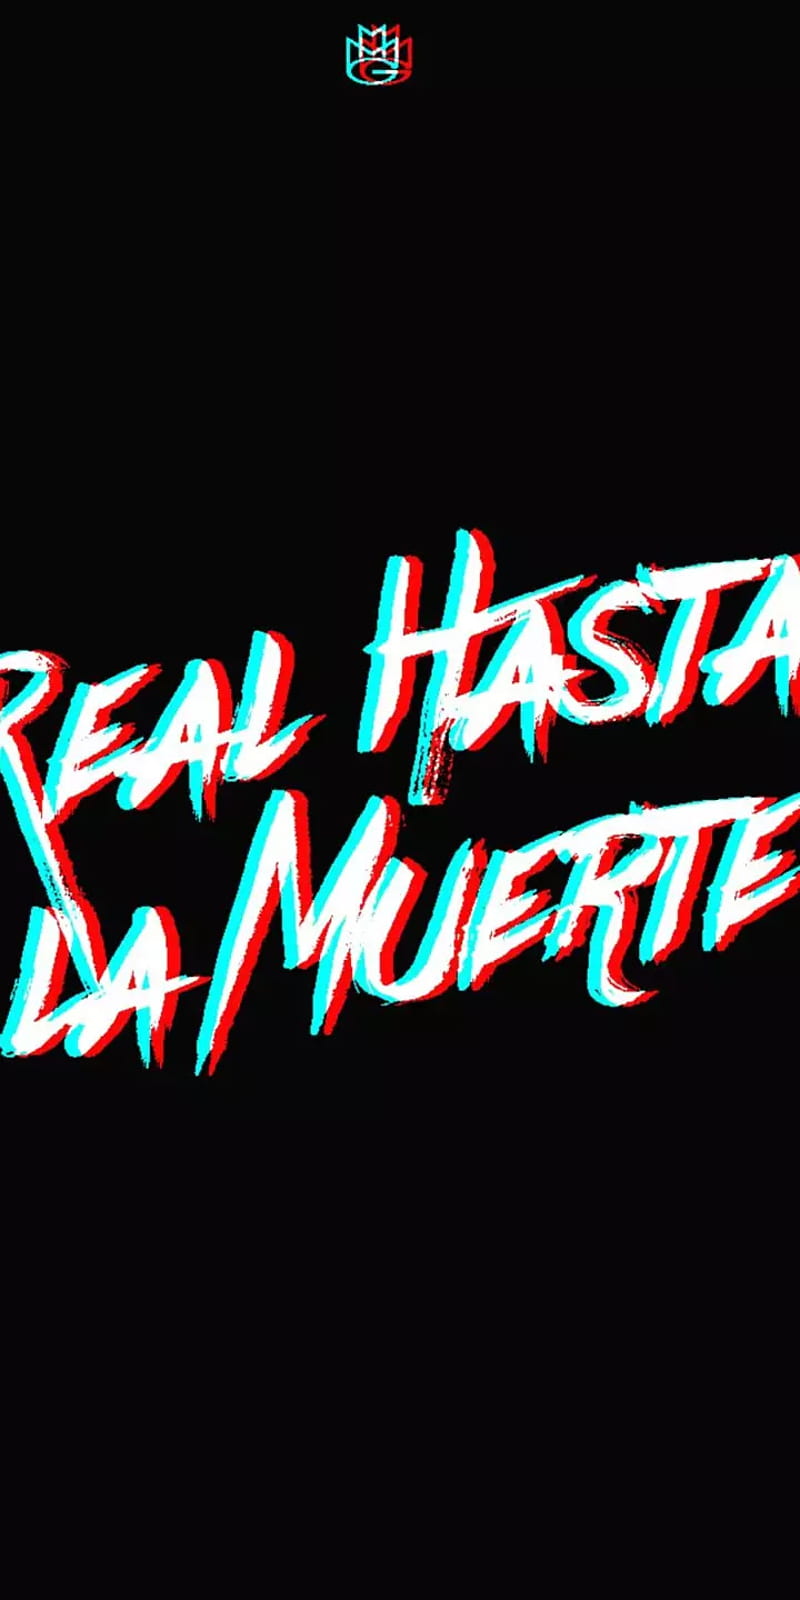 Real hasta la muerte, logo, HD phone wallpaper